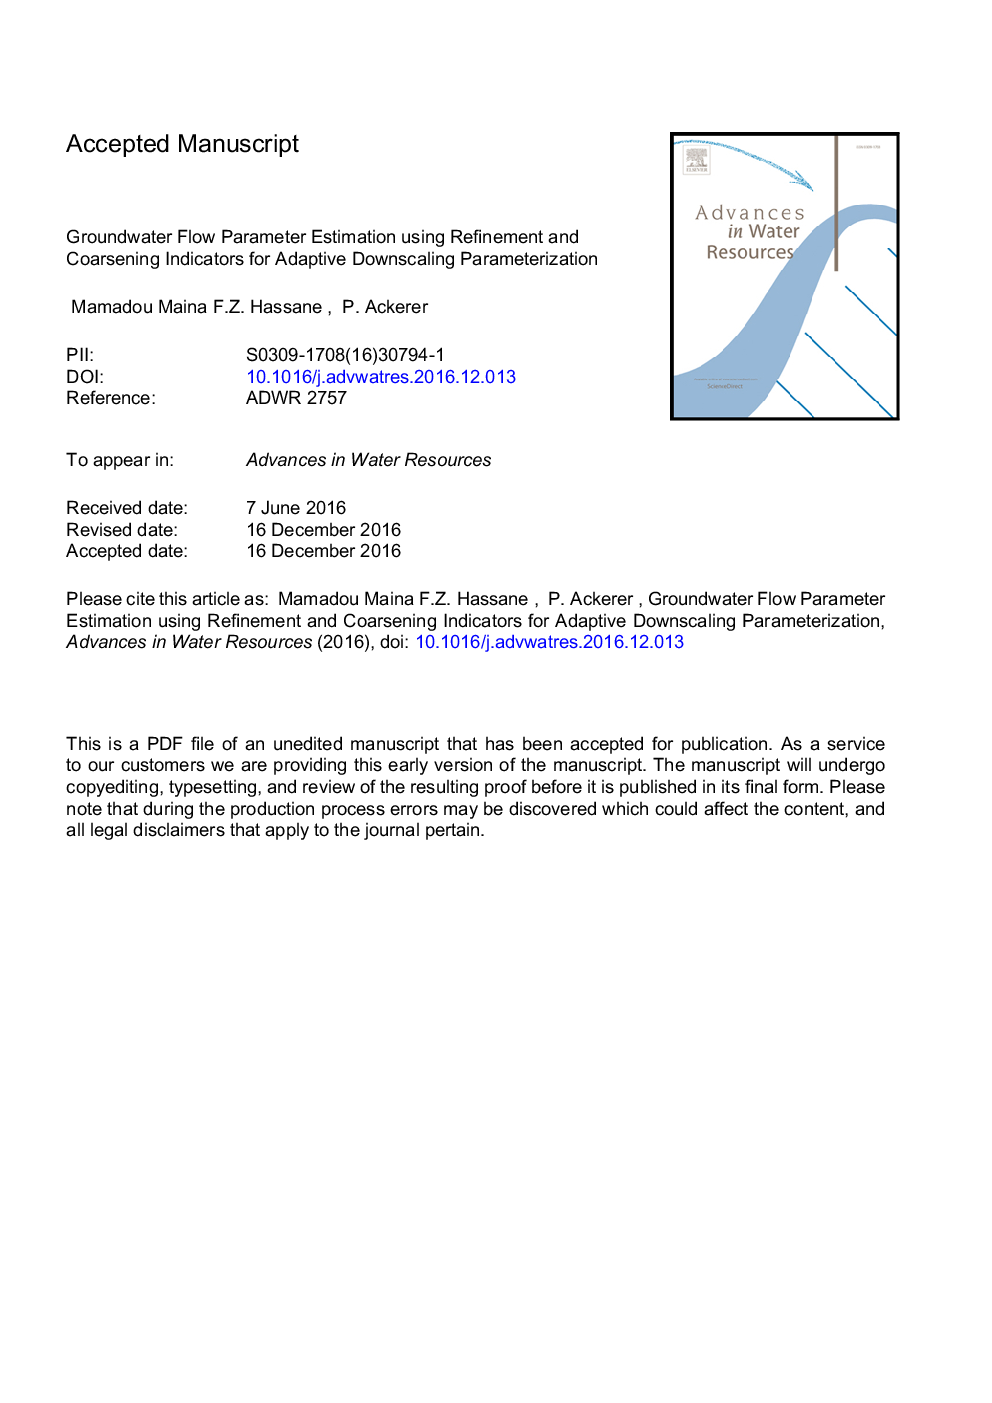 برآورد پارامتر جریان آب زیرزمینی با استفاده از شاخص های پالایش و هماهنگ سازی برای پارامتر کردن مقیاس انطباق 